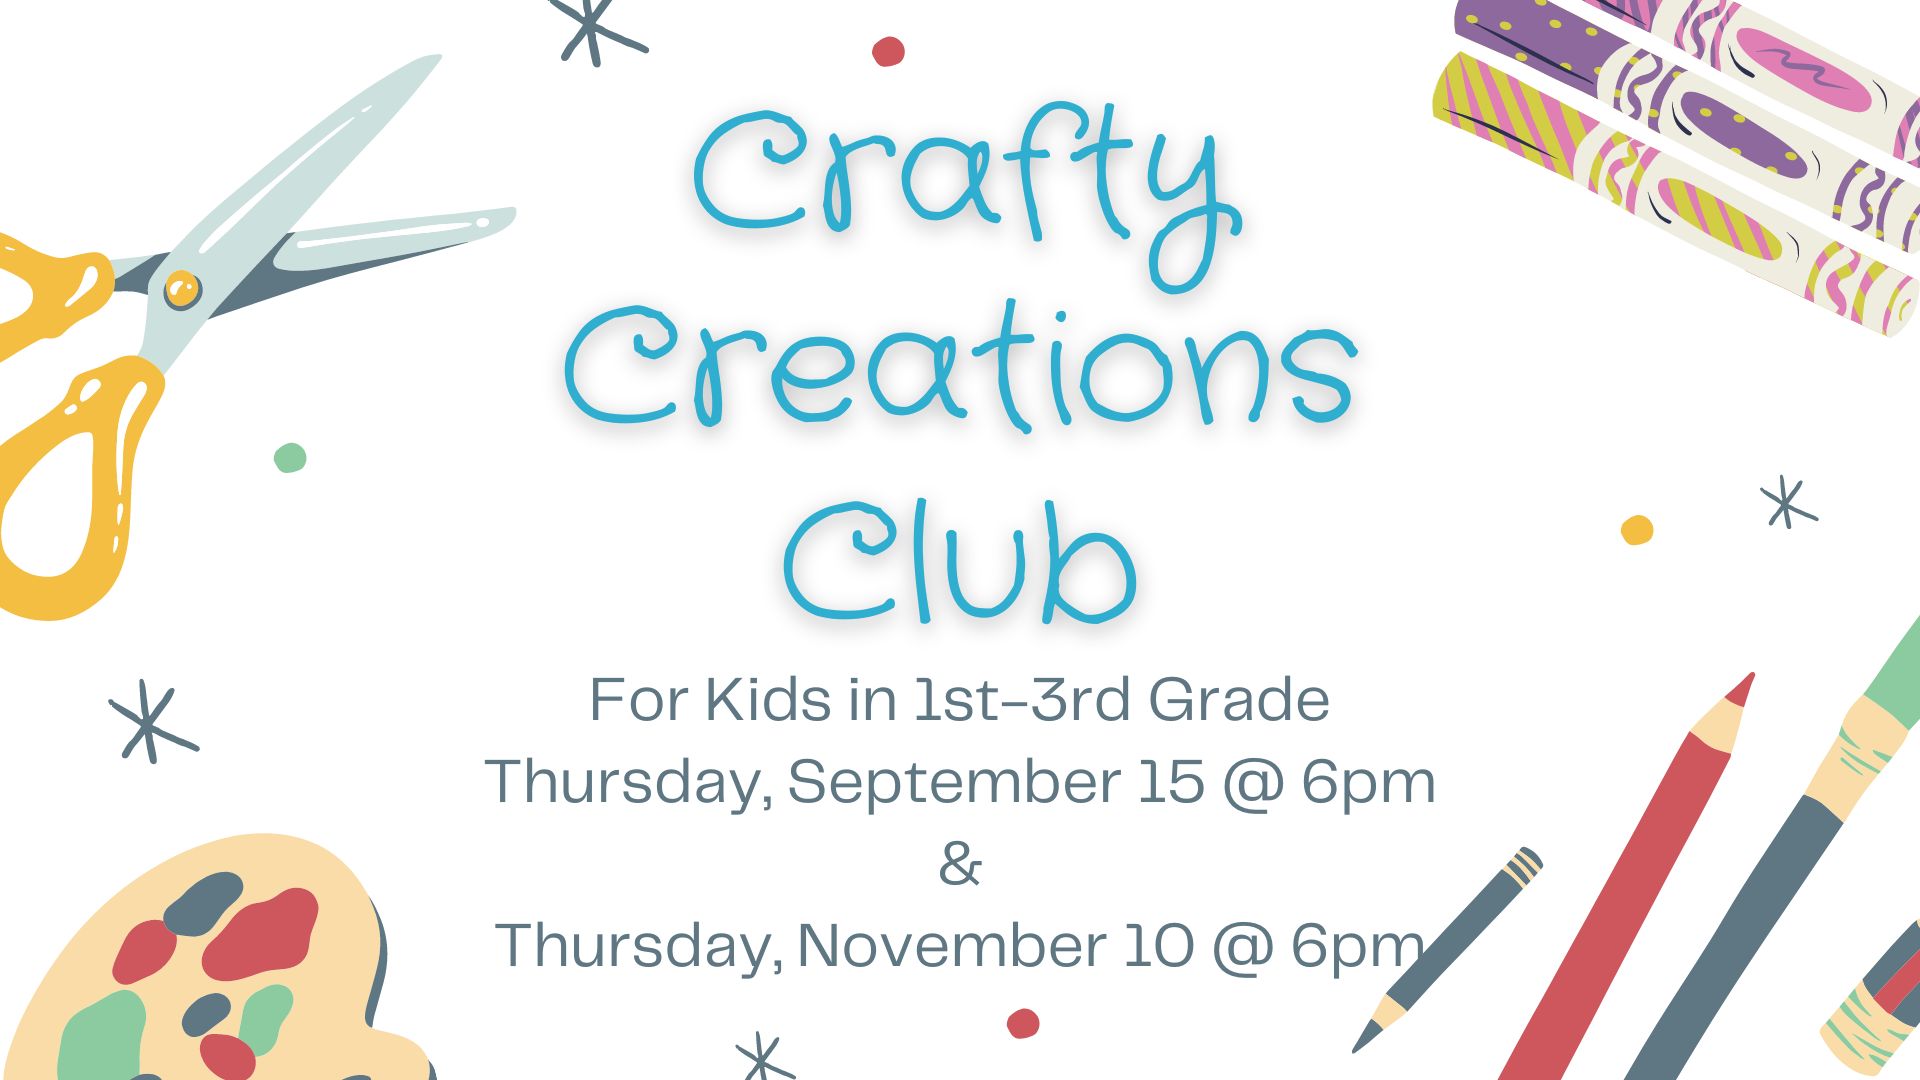 Flyer for Crafty Creations Club